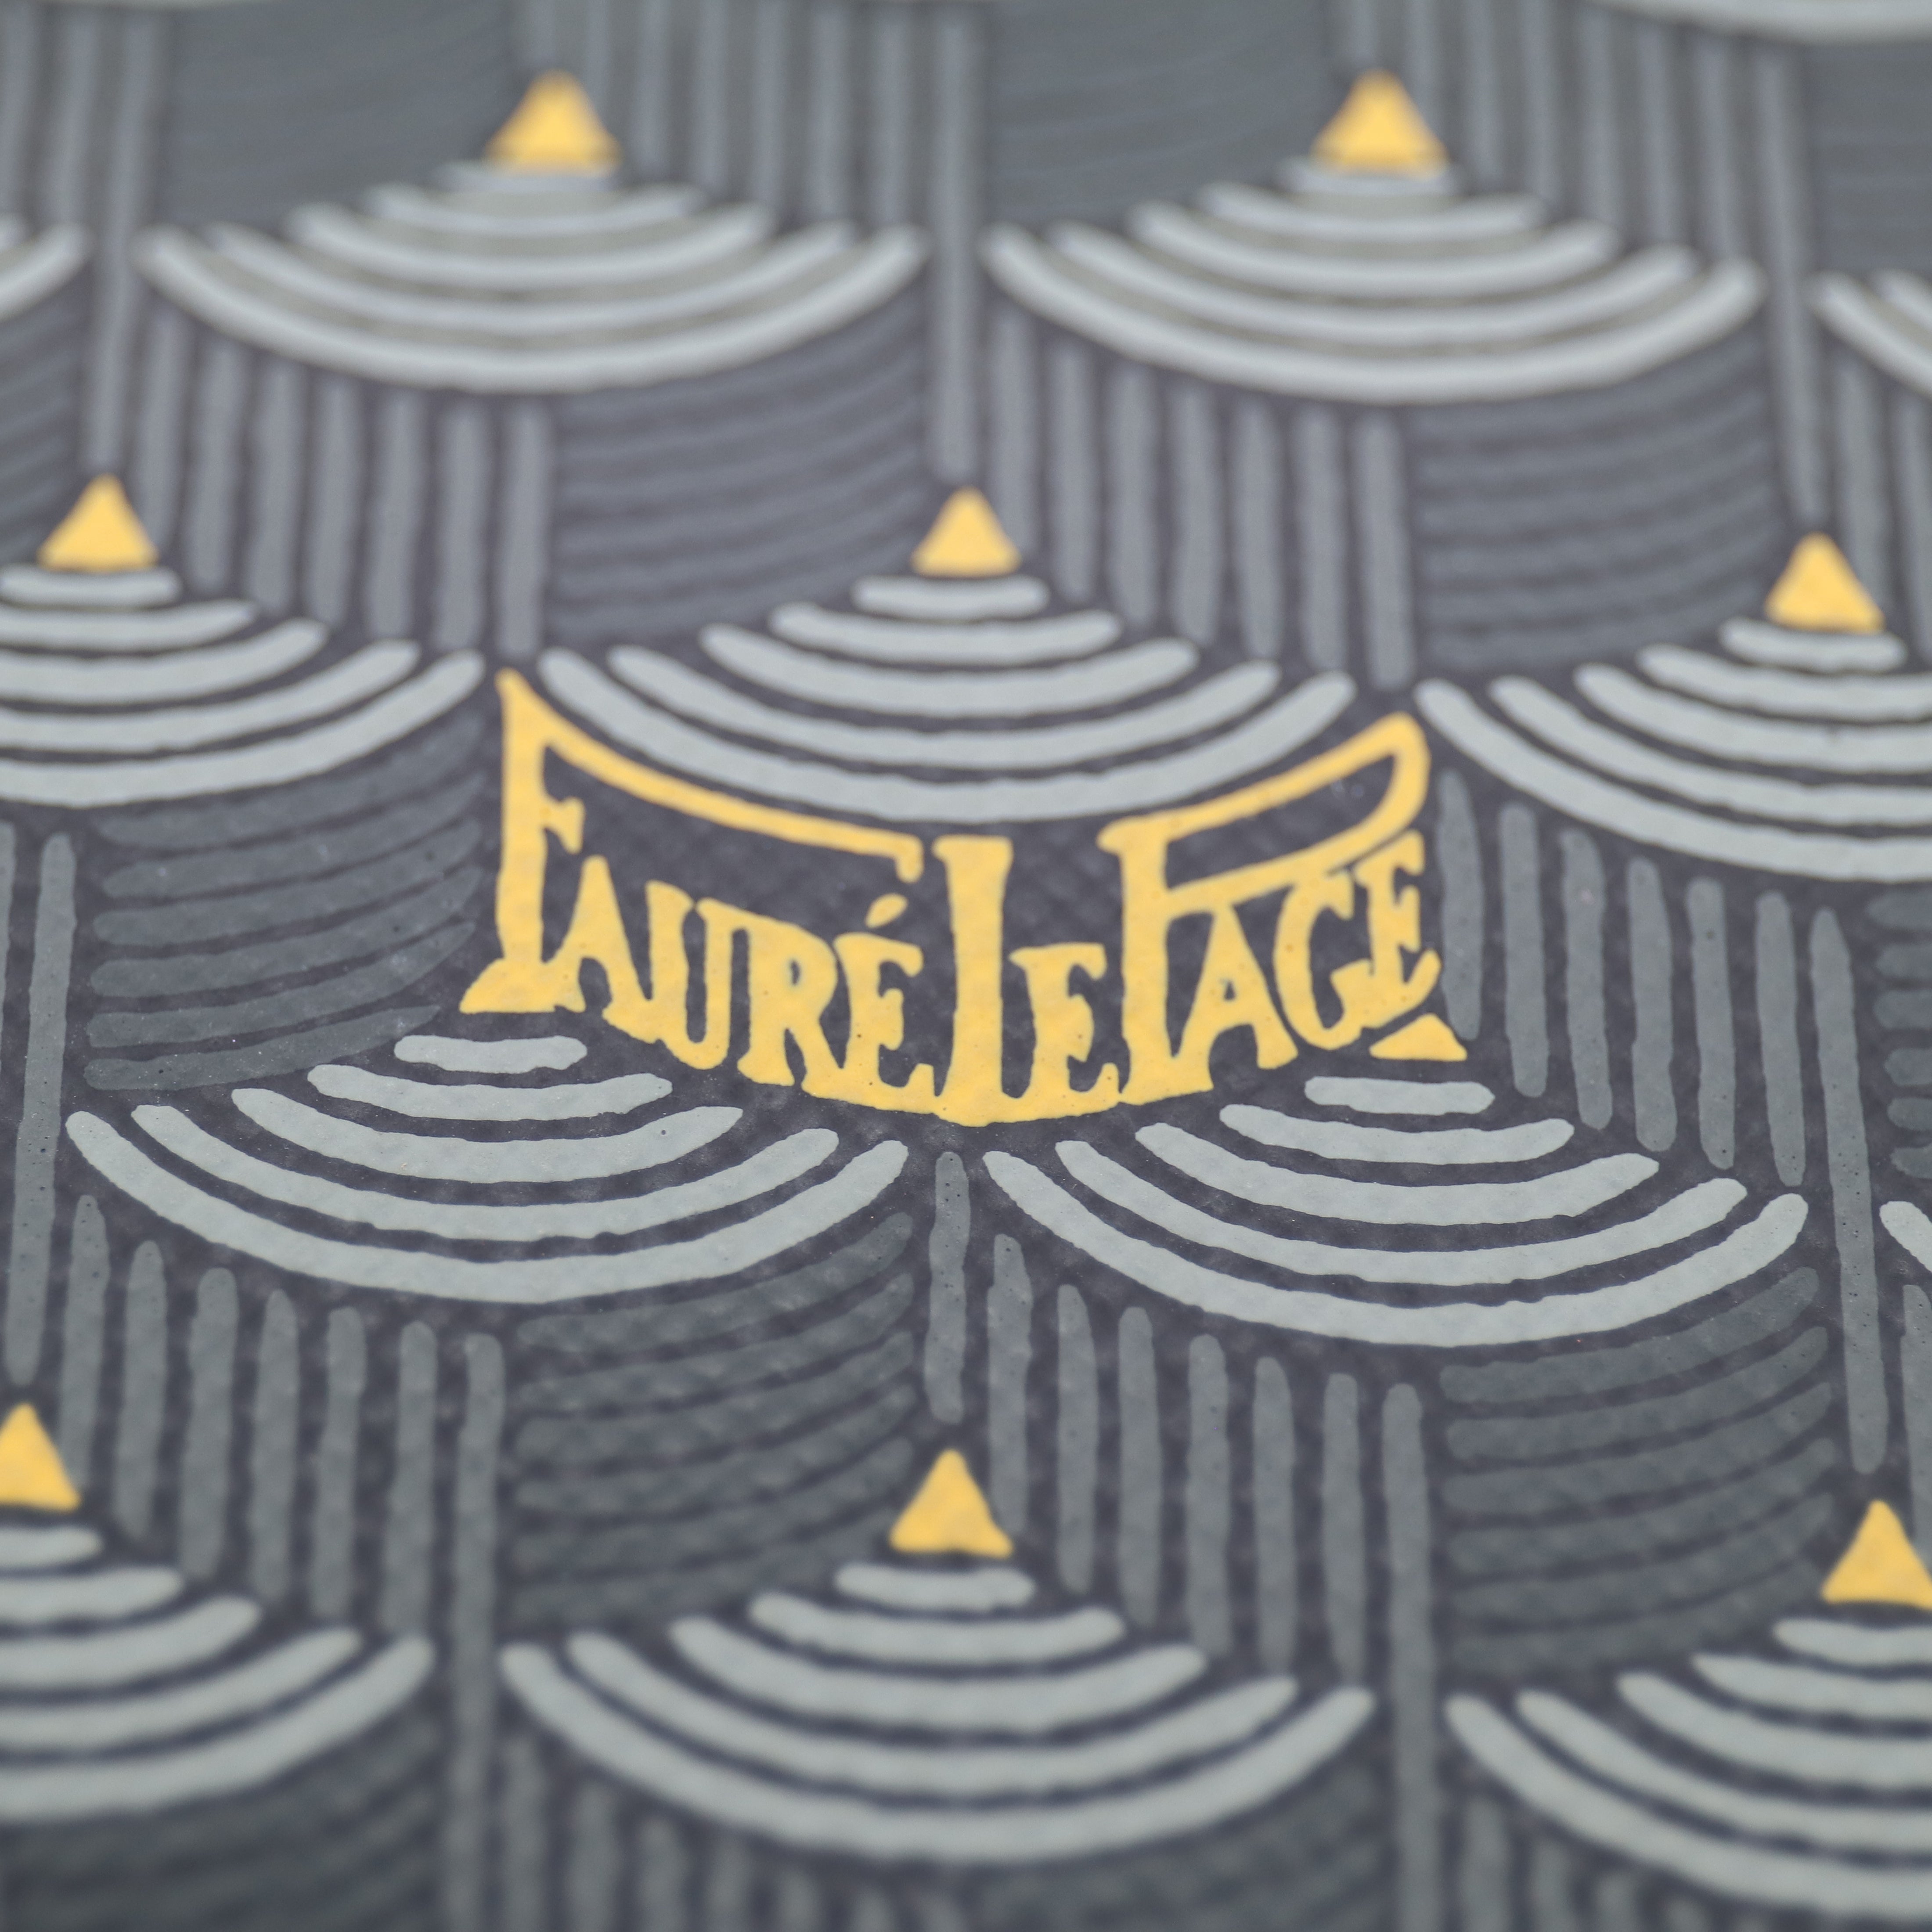 Fauré Le Page Bags Zip 29 - Empire Green Ecailles – PROVENANCE